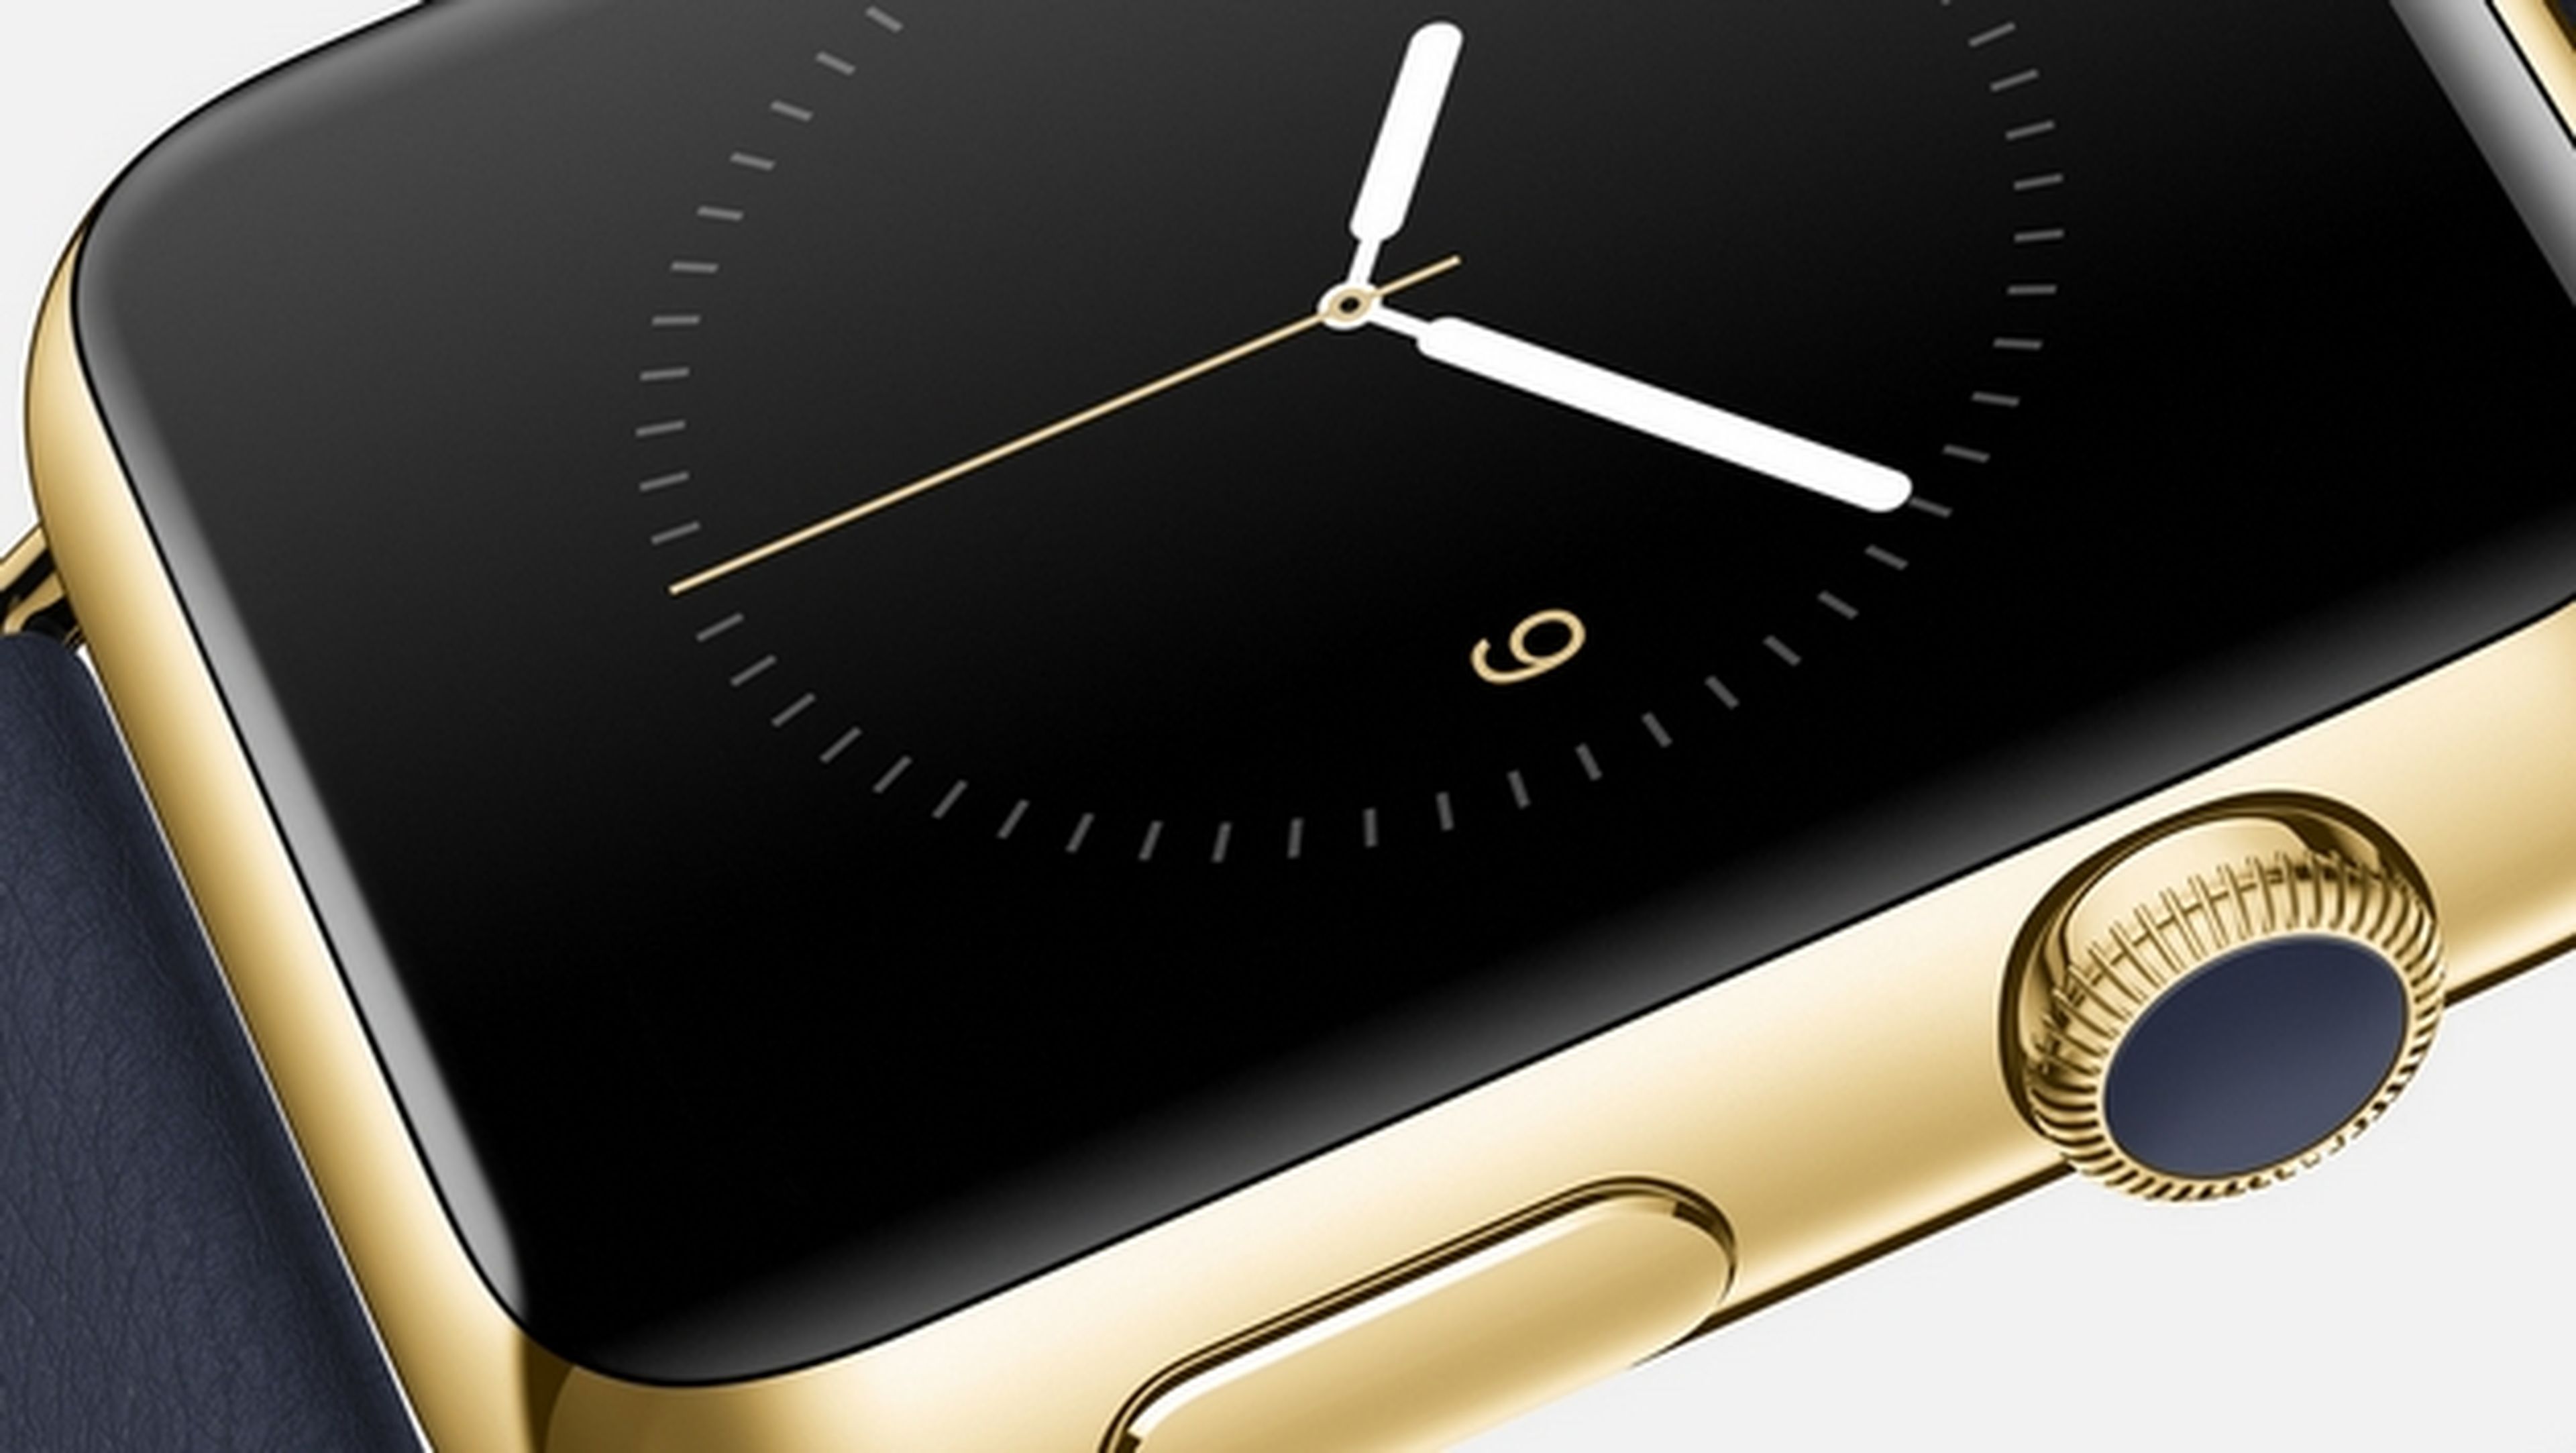 El smartwatch Apple Watch Edition en oro de 18 kilates podría costar 1.200 dólares.